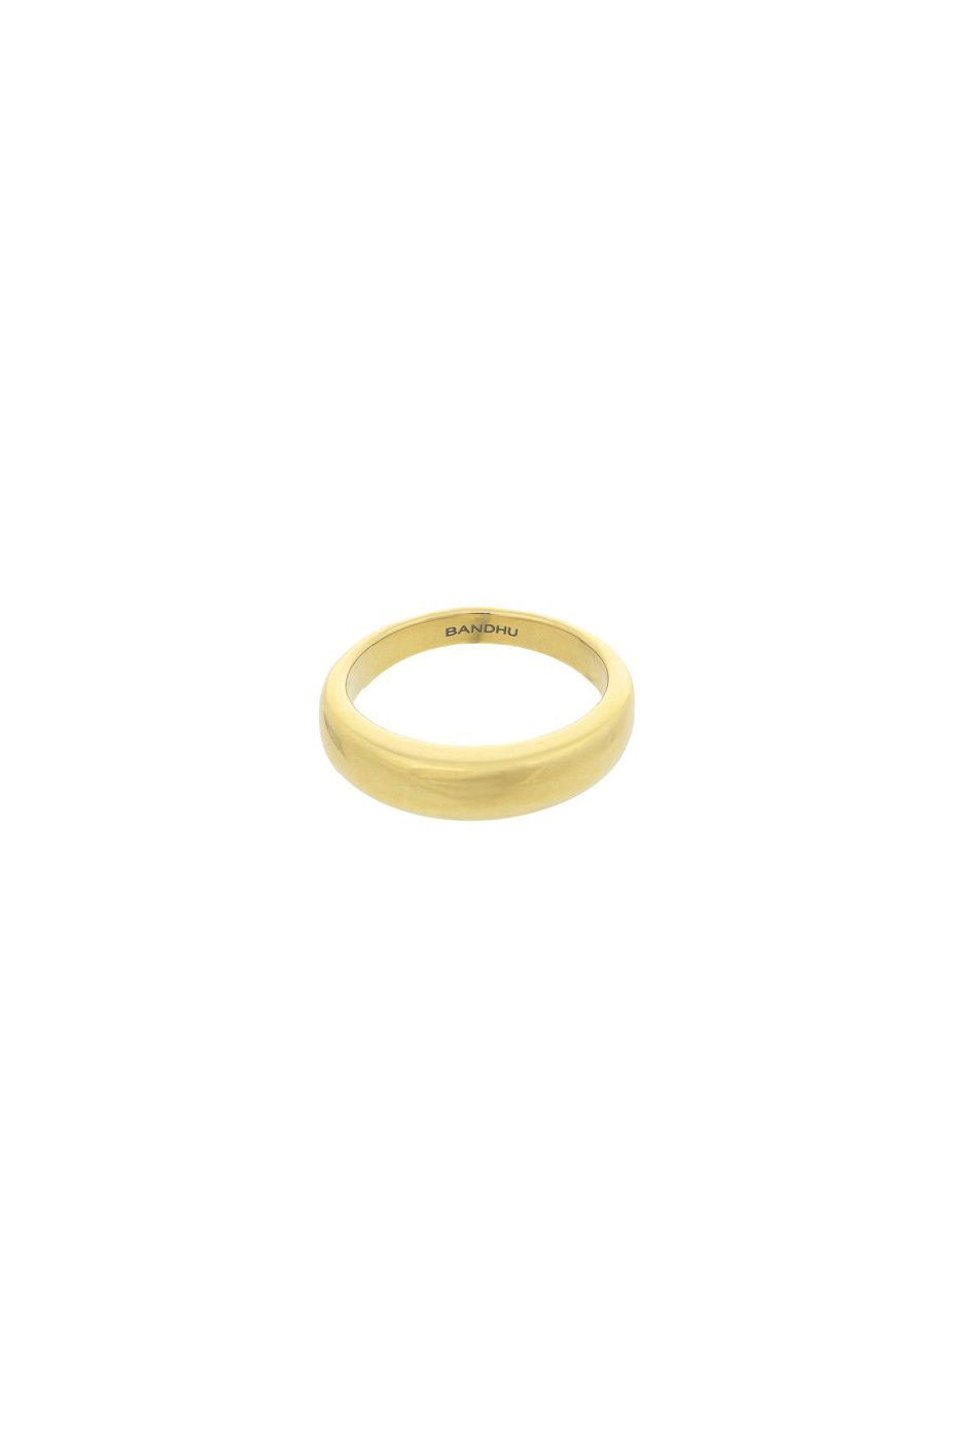 Bandhu Pinkey Ring - Gold